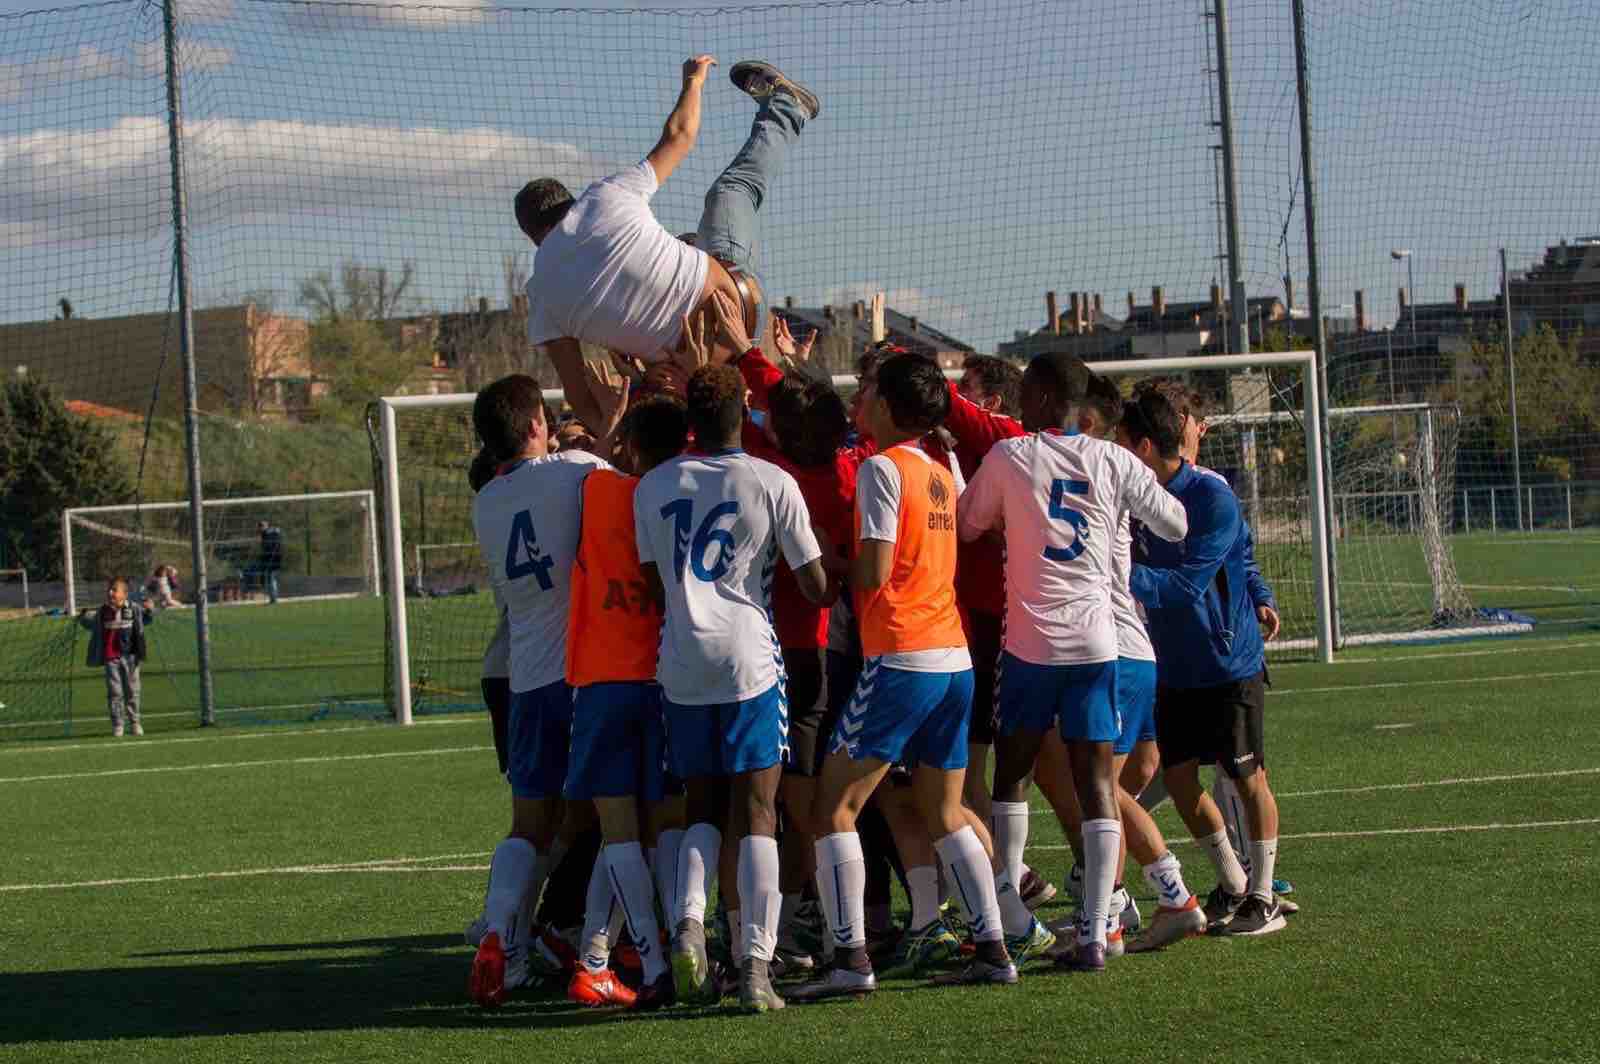 La histórica victoria del Rayo Majadahonda juvenil sobre el Valladolid en fotos, vídeos, crónicas, reacciones…